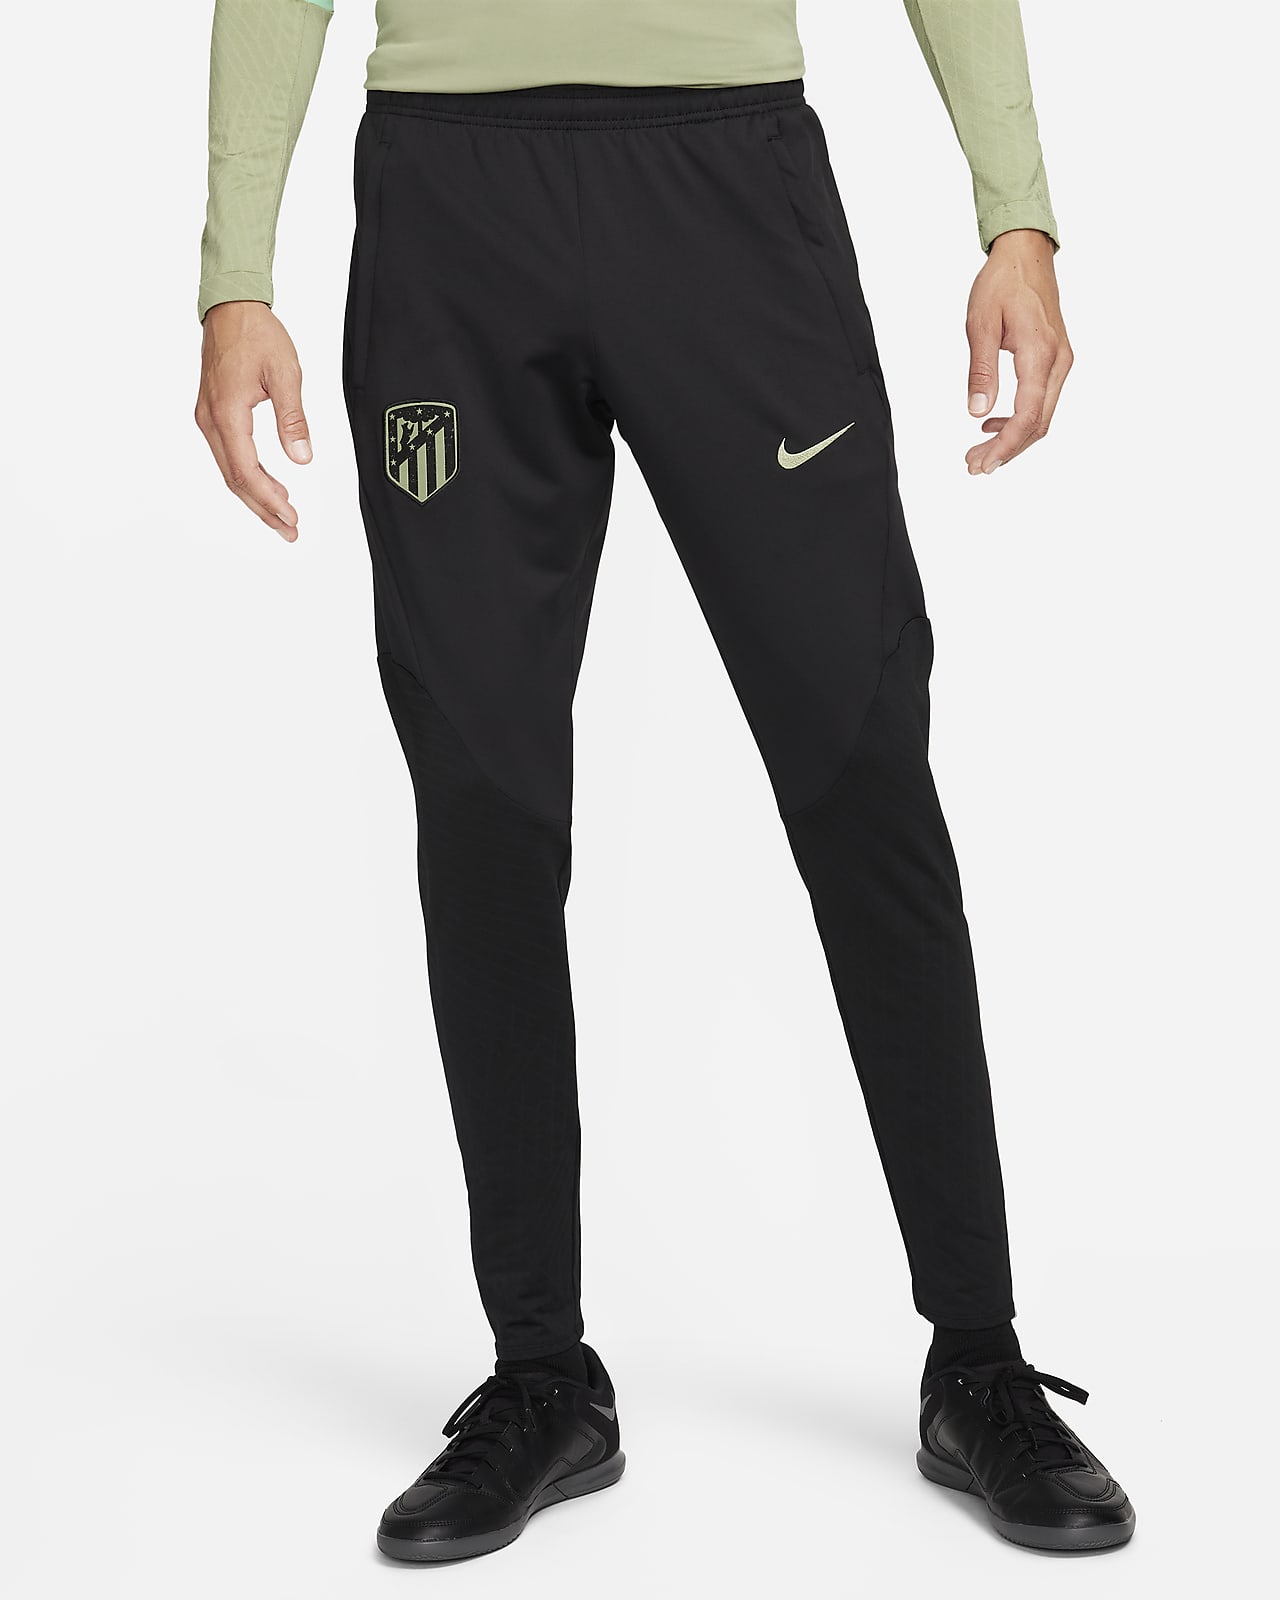 Ανδρικό ποδοσφαιρικό πλεκτό παντελόνι Nike Dri-FIT εναλλακτικής εμφάνισης Ατλέτικο Μαδρίτης Strike